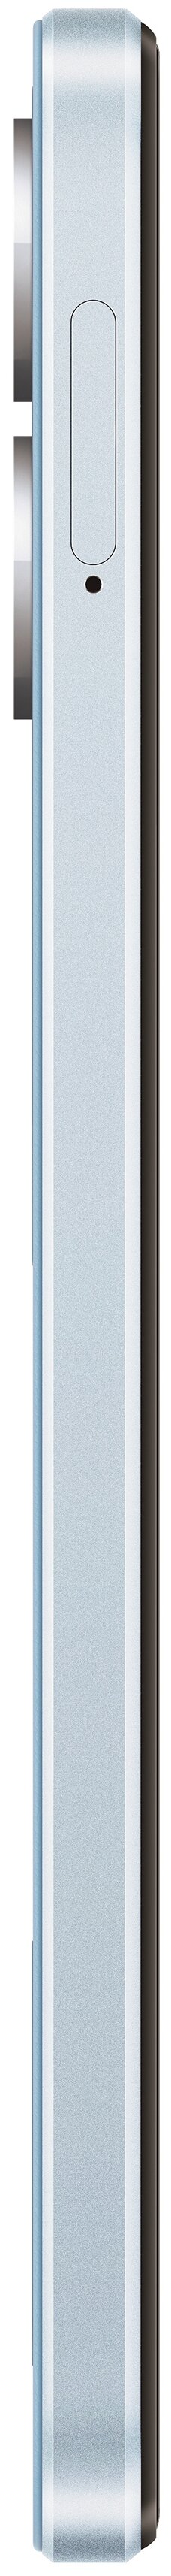 картинка OPPO A17 4/64 ГБ Global, Dual nano SIM, синий от магазина Симпатия